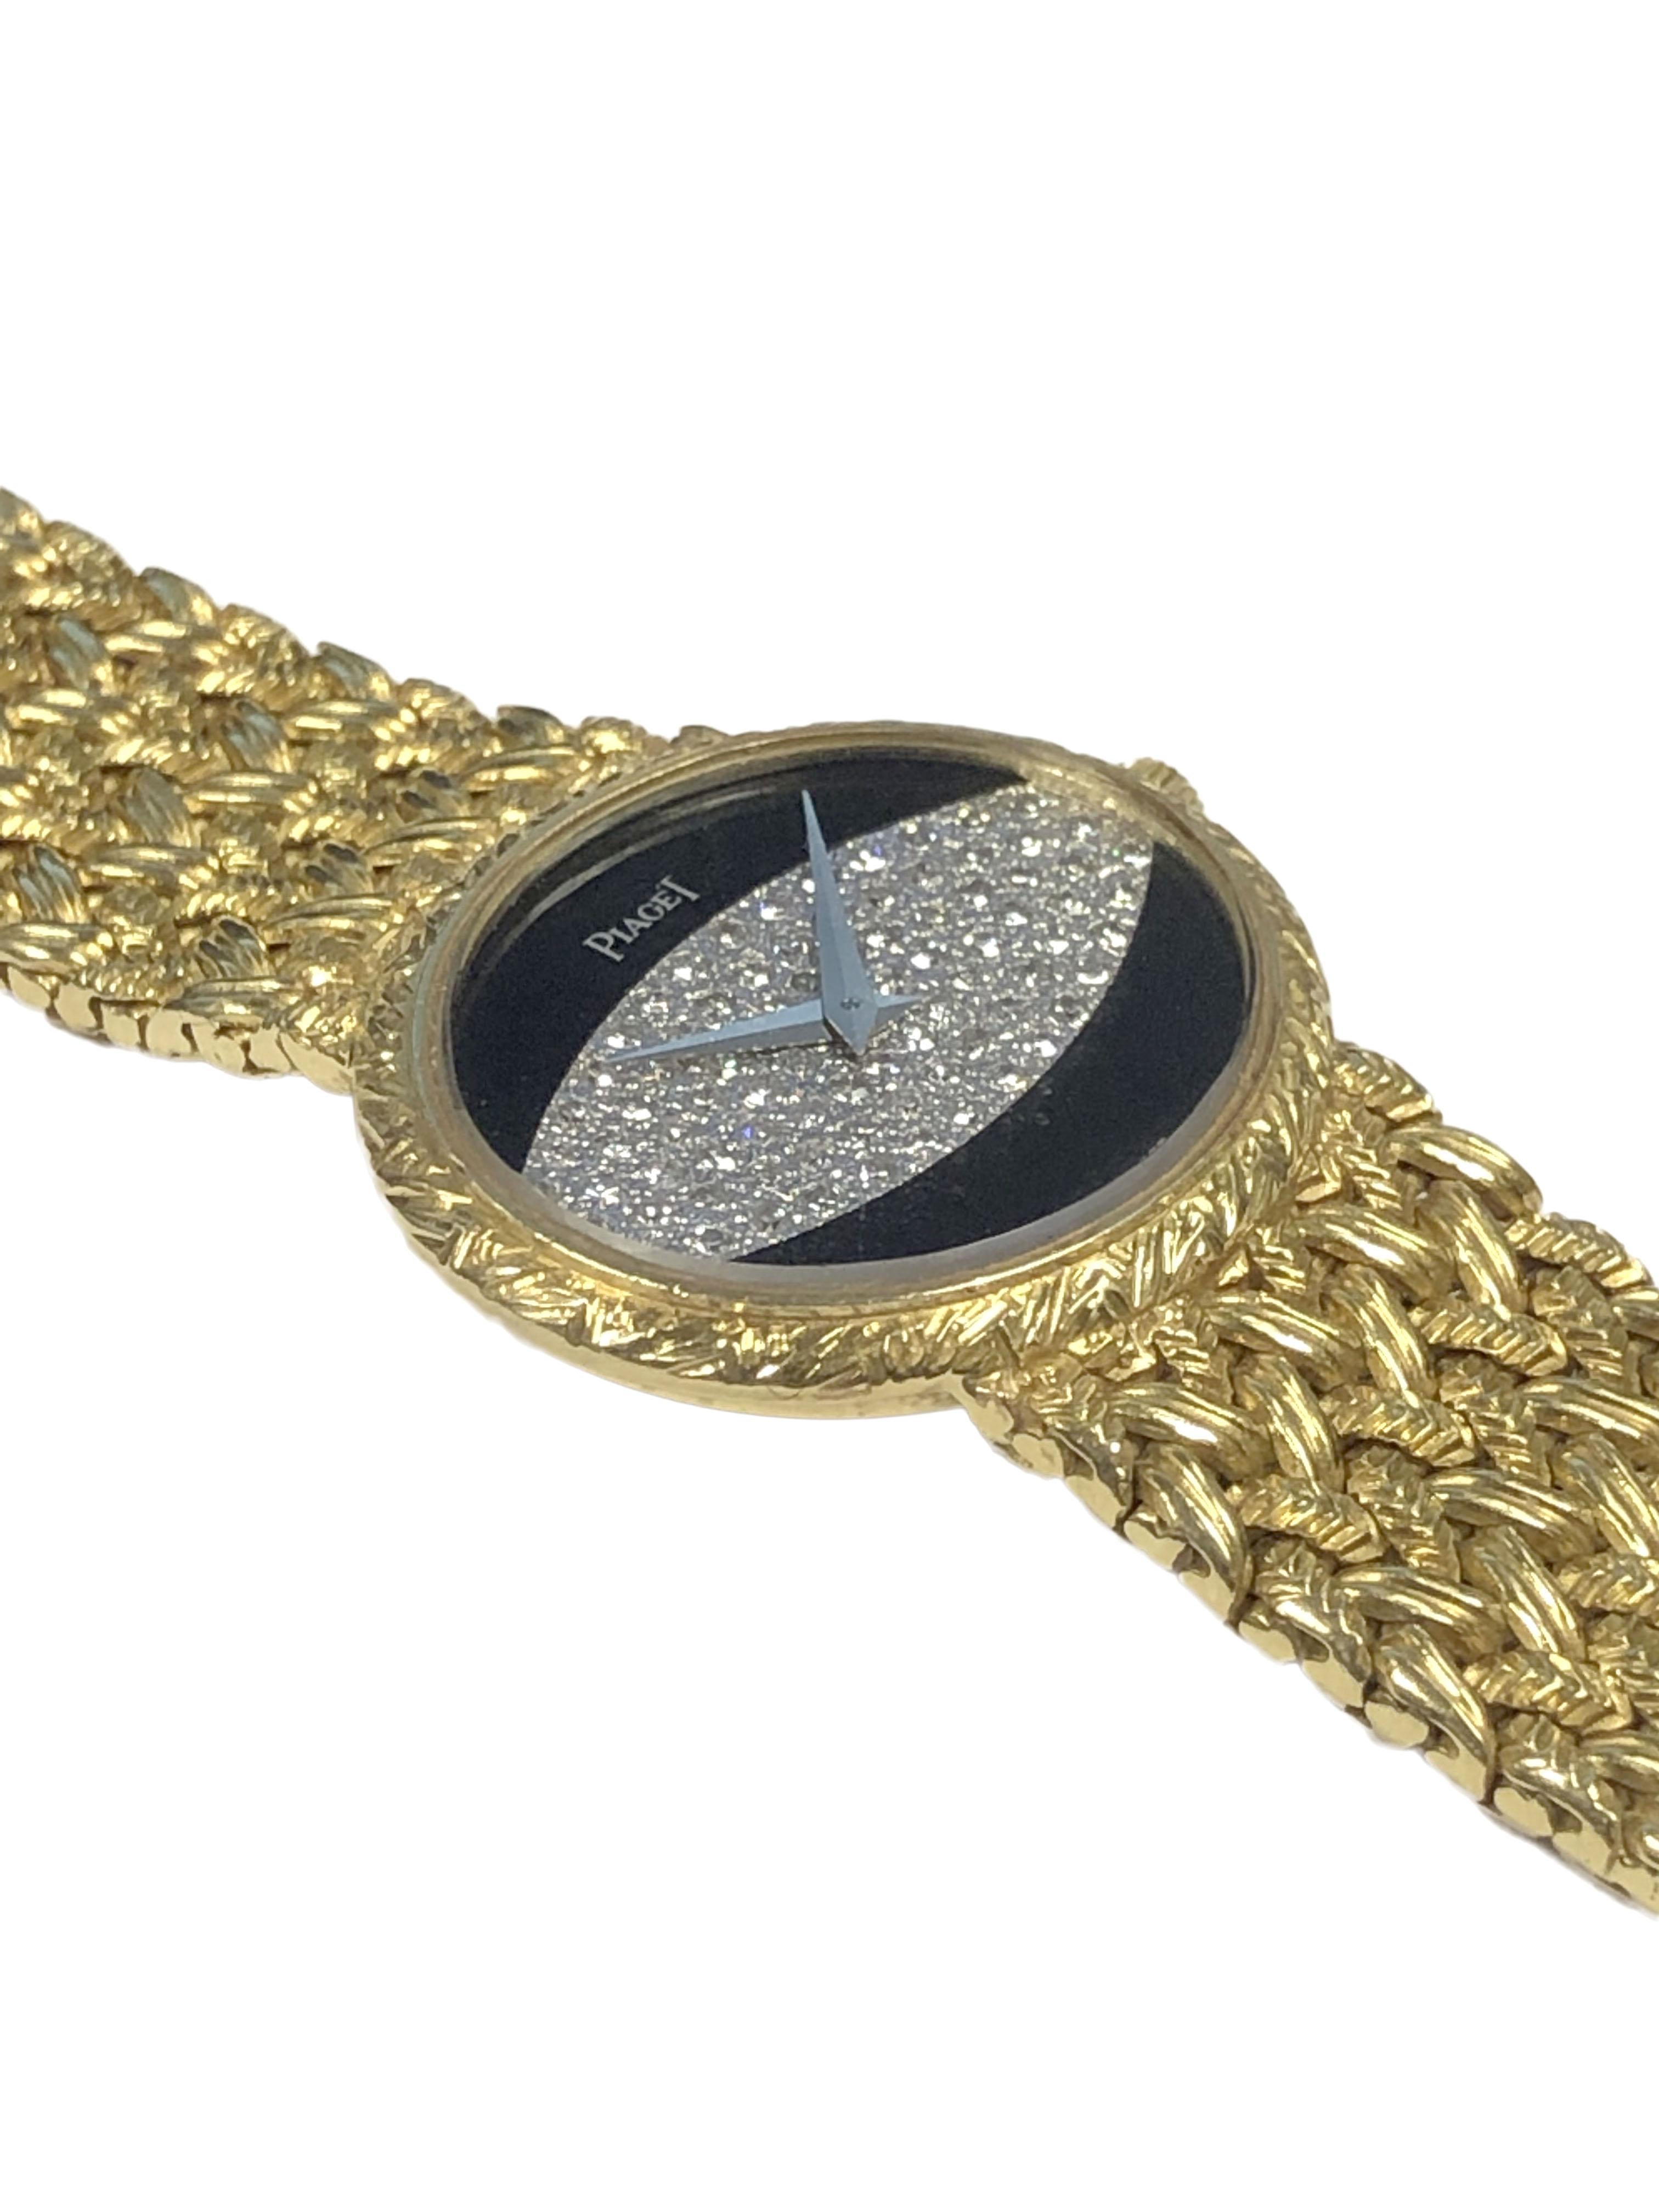 Circa 1970 Montre-bracelet Piaget pour femme, 27 x 24 M.M. Boîtier ovale en or jaune 18k avec lunette texturée, cadran pavé d'onyx et de diamants, mouvement mécanique à remontage manuel, 17 rubis.  bracelet souple attaché en maille douce avec